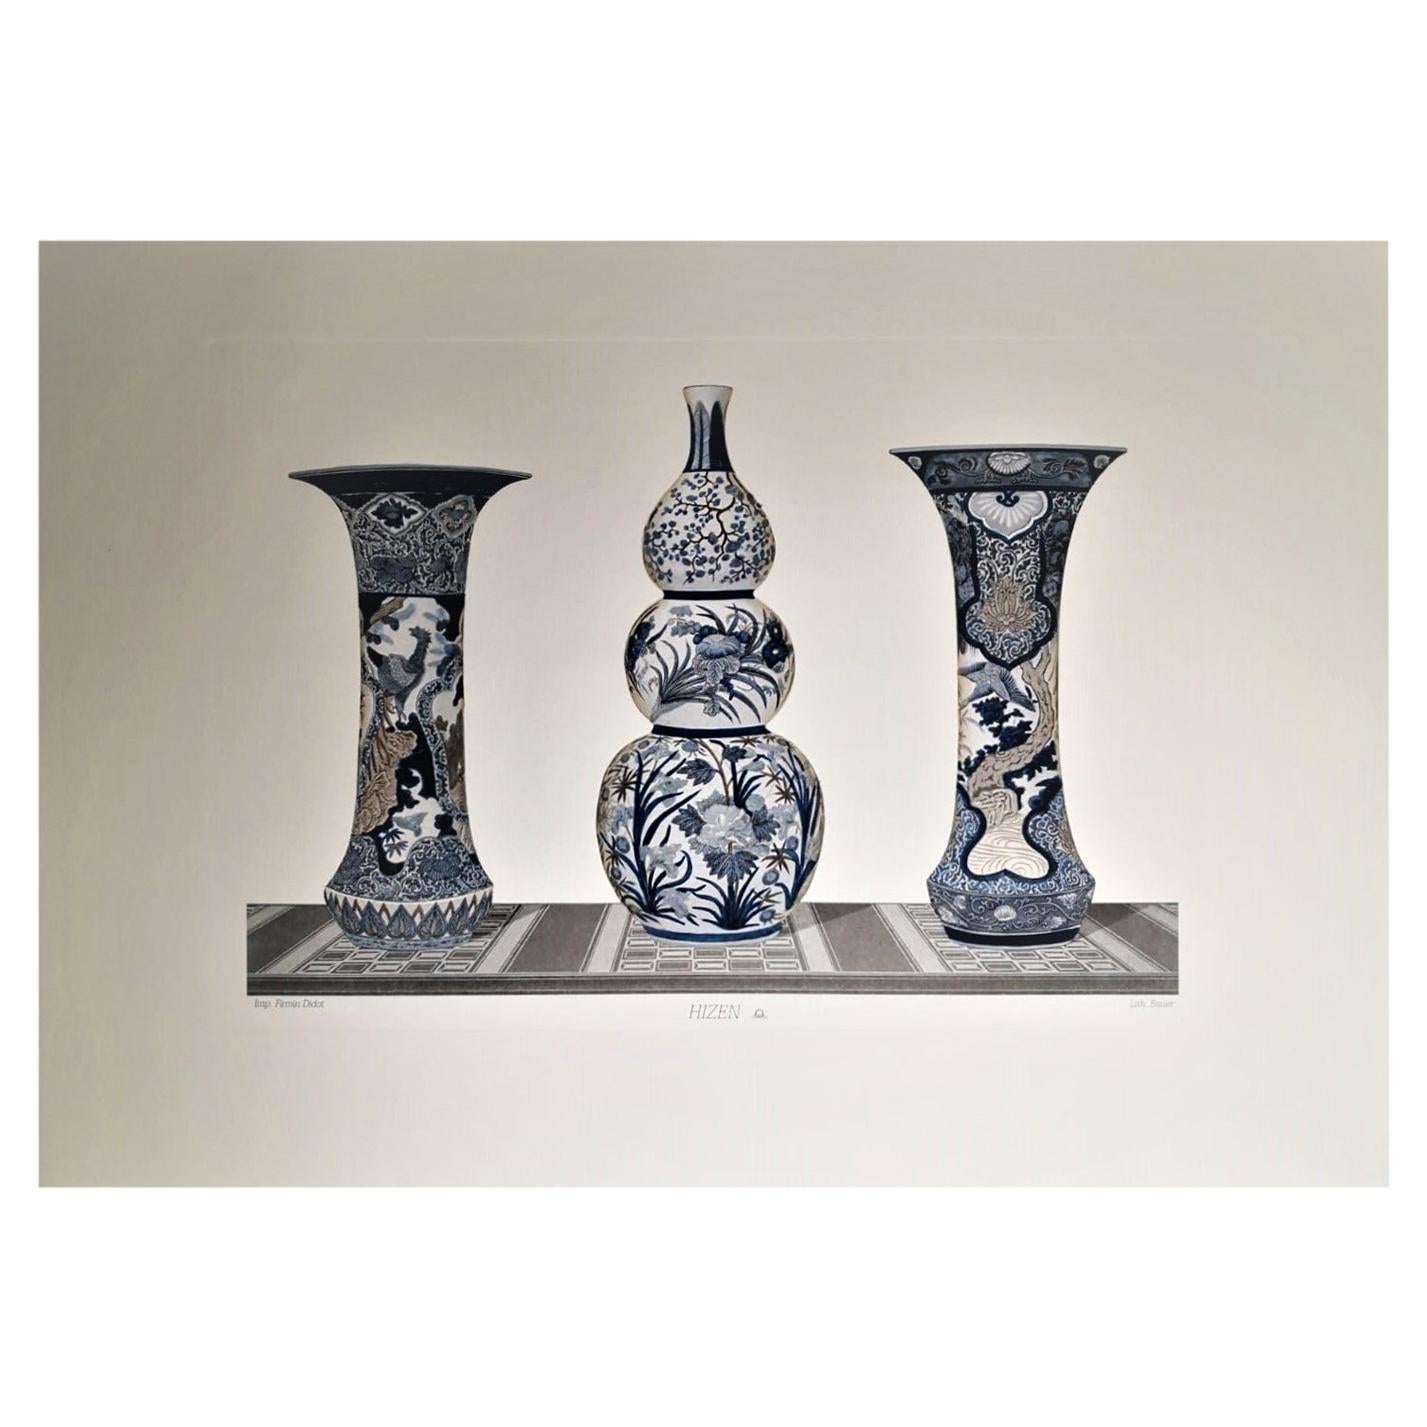 Impression japonaise de vases "HIZEN" peints à la main en bleu, gris et blanc